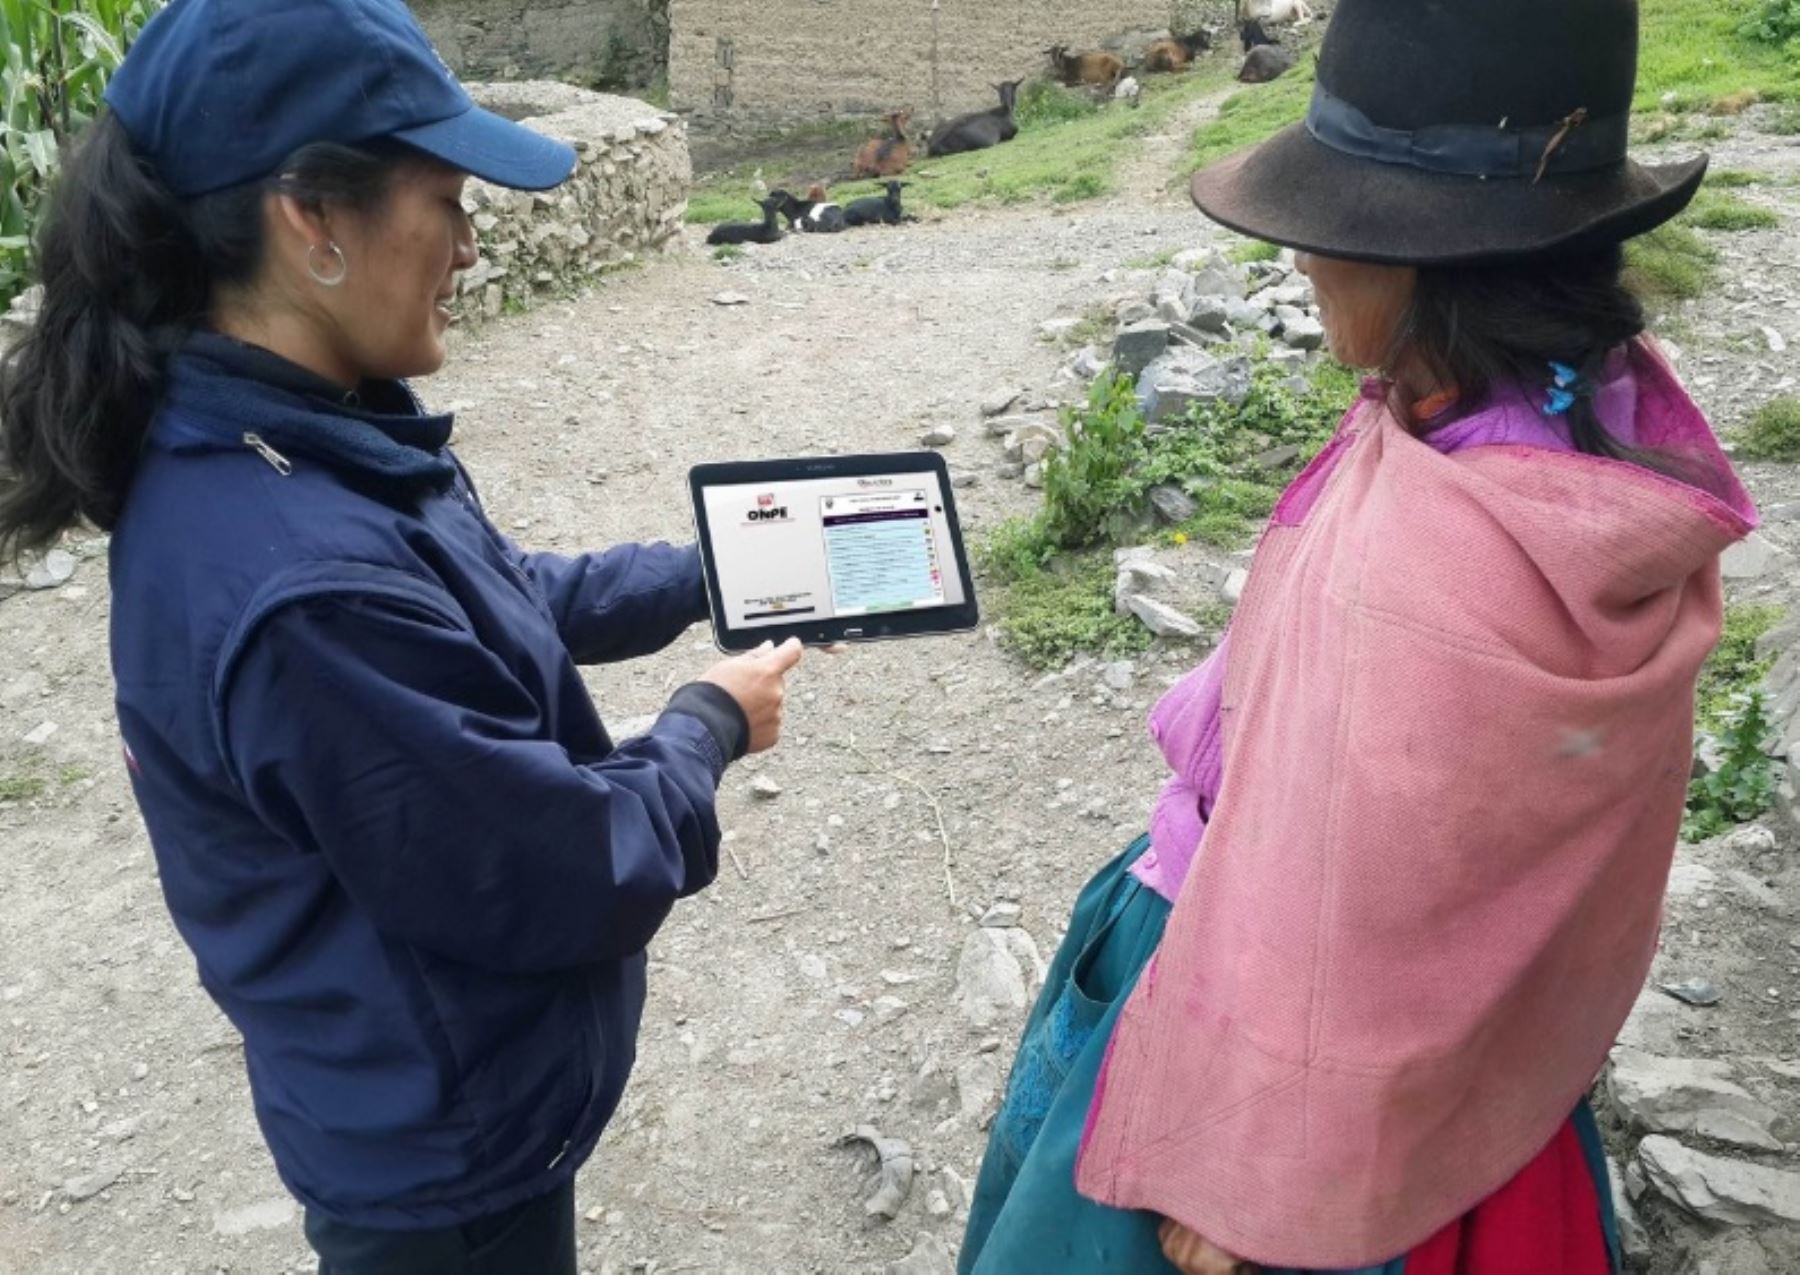 Con miras a las elecciones municipales del próximo 12 de marzo, la Oficina Nacional de Procesos Electorales (ONPE) capacita, casa por casa, a los electores del distrito de Pucacolpa, en la provincia de Huanta, región Ayacucho, sobre la forma de votar electrónicamente.